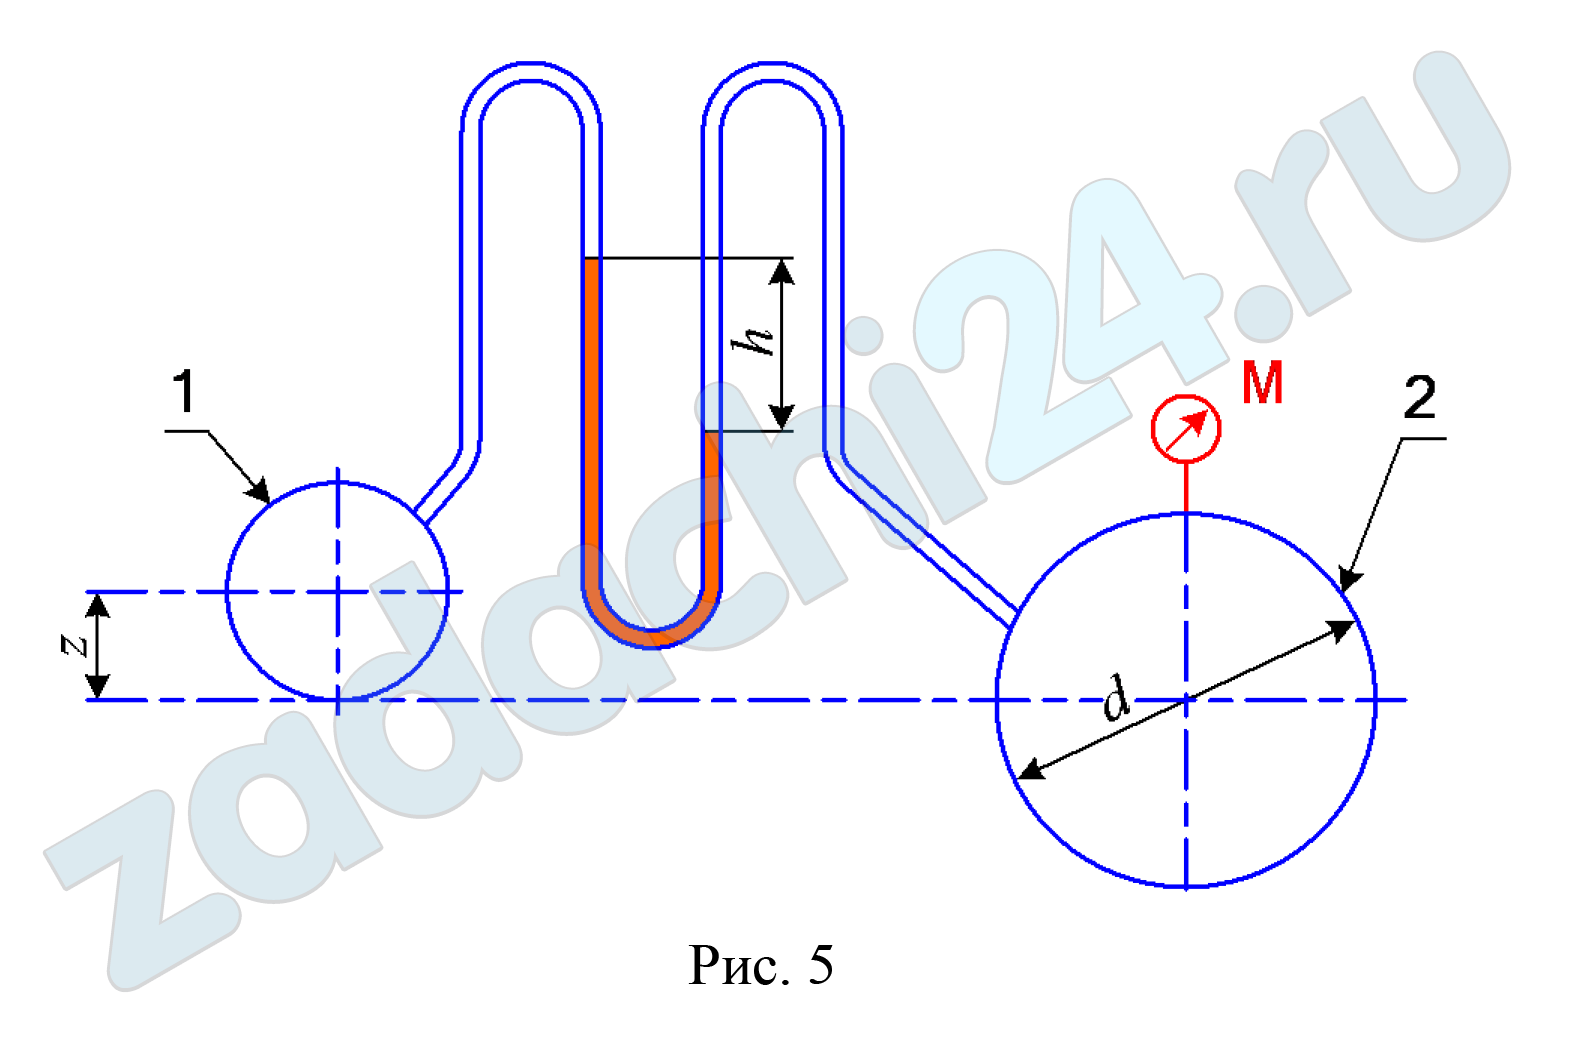 Два трубопровода располагаются по осям относительно друг друга на высоте z = 0,4 м (рис. 5). К трубопроводам подсоединен ртутный манометр, который показывает перепад h = 0,25м. Определить разность давлений в трубопроводах, а также давление р1 в первом трубопроводе, если механический манометр, присоединенный ко второму трубопроводу диаметром d = 0,3 м, показывает давление рм = 340 кПа. Плотность воды ρв = 1000 кг/м³, плотность ртути ρрт = 13600 кг/м³.